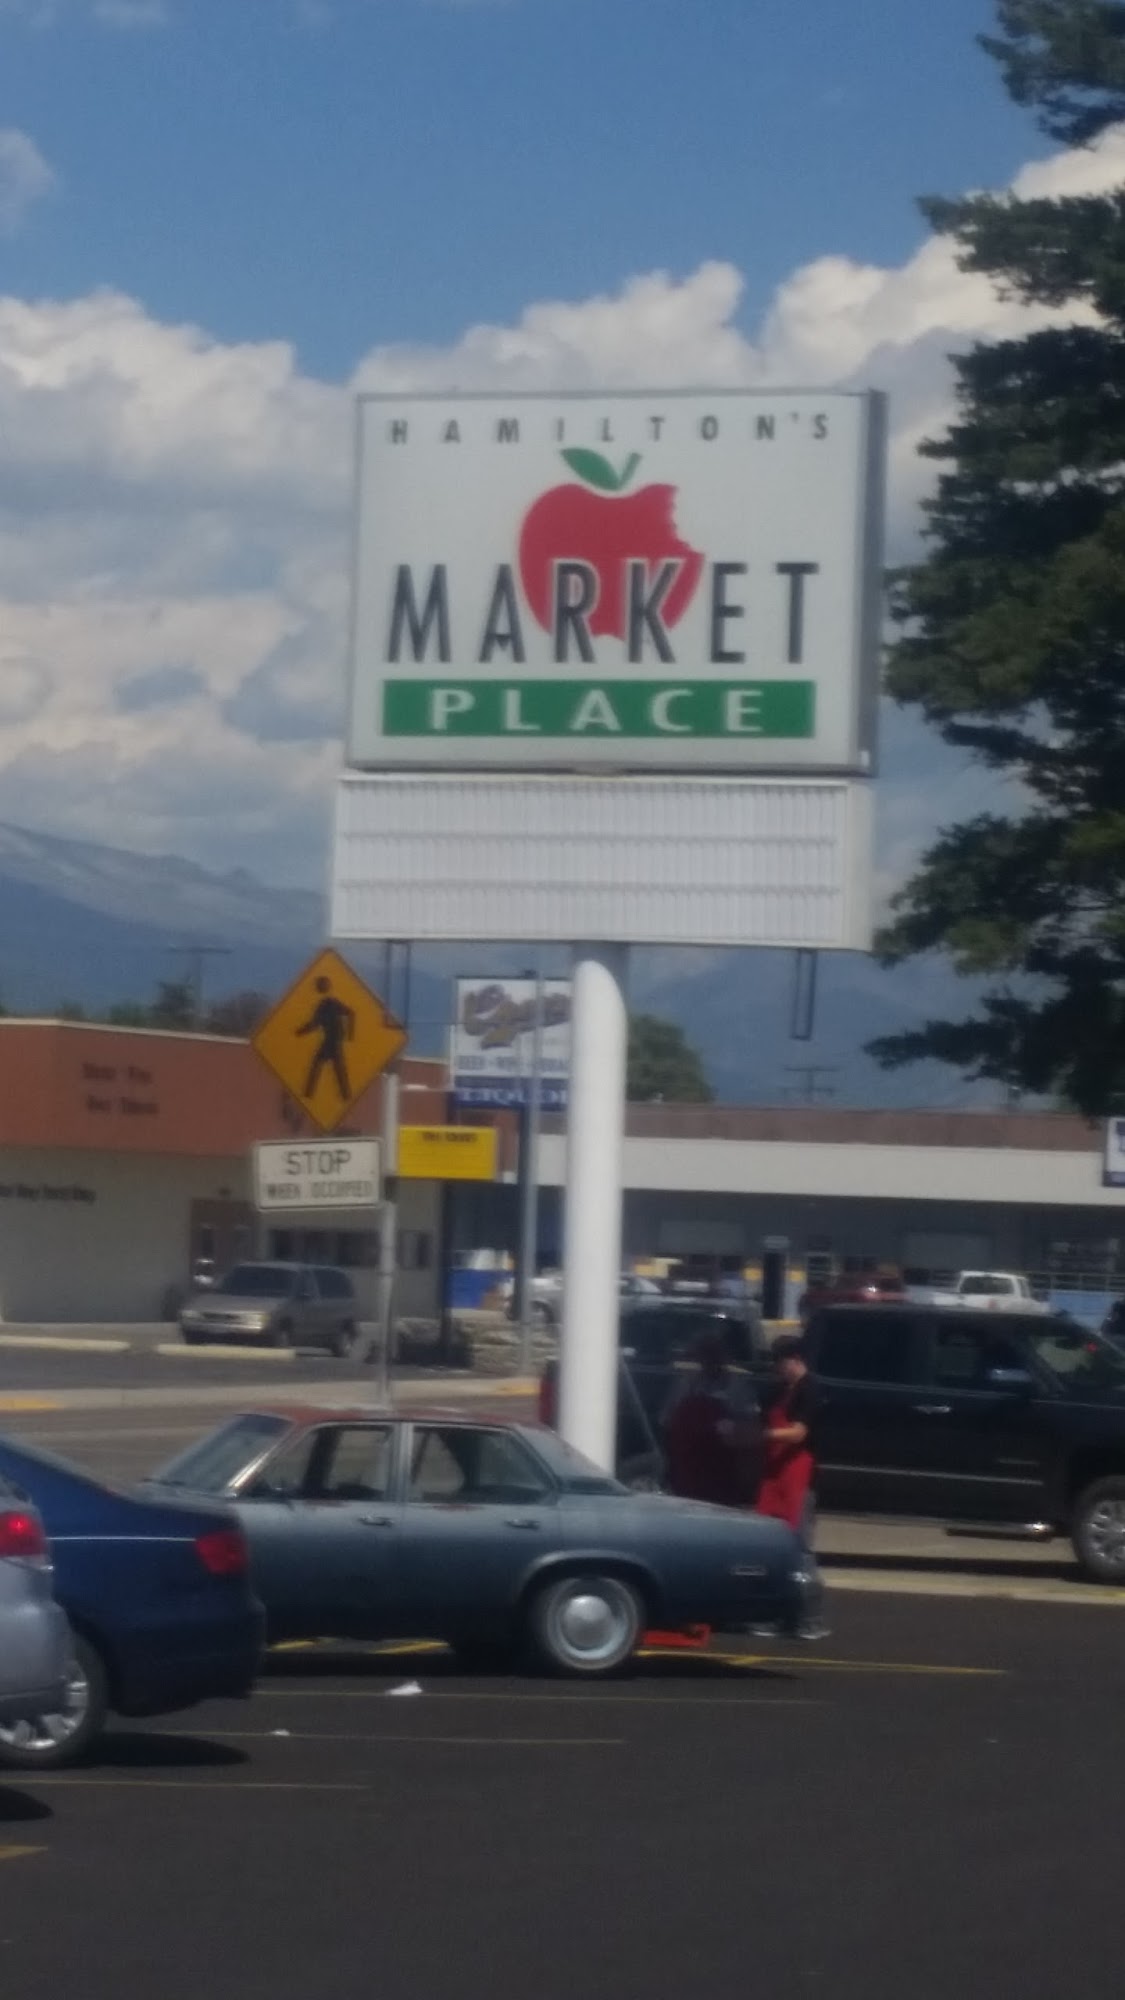 Hamilton's Marketplace